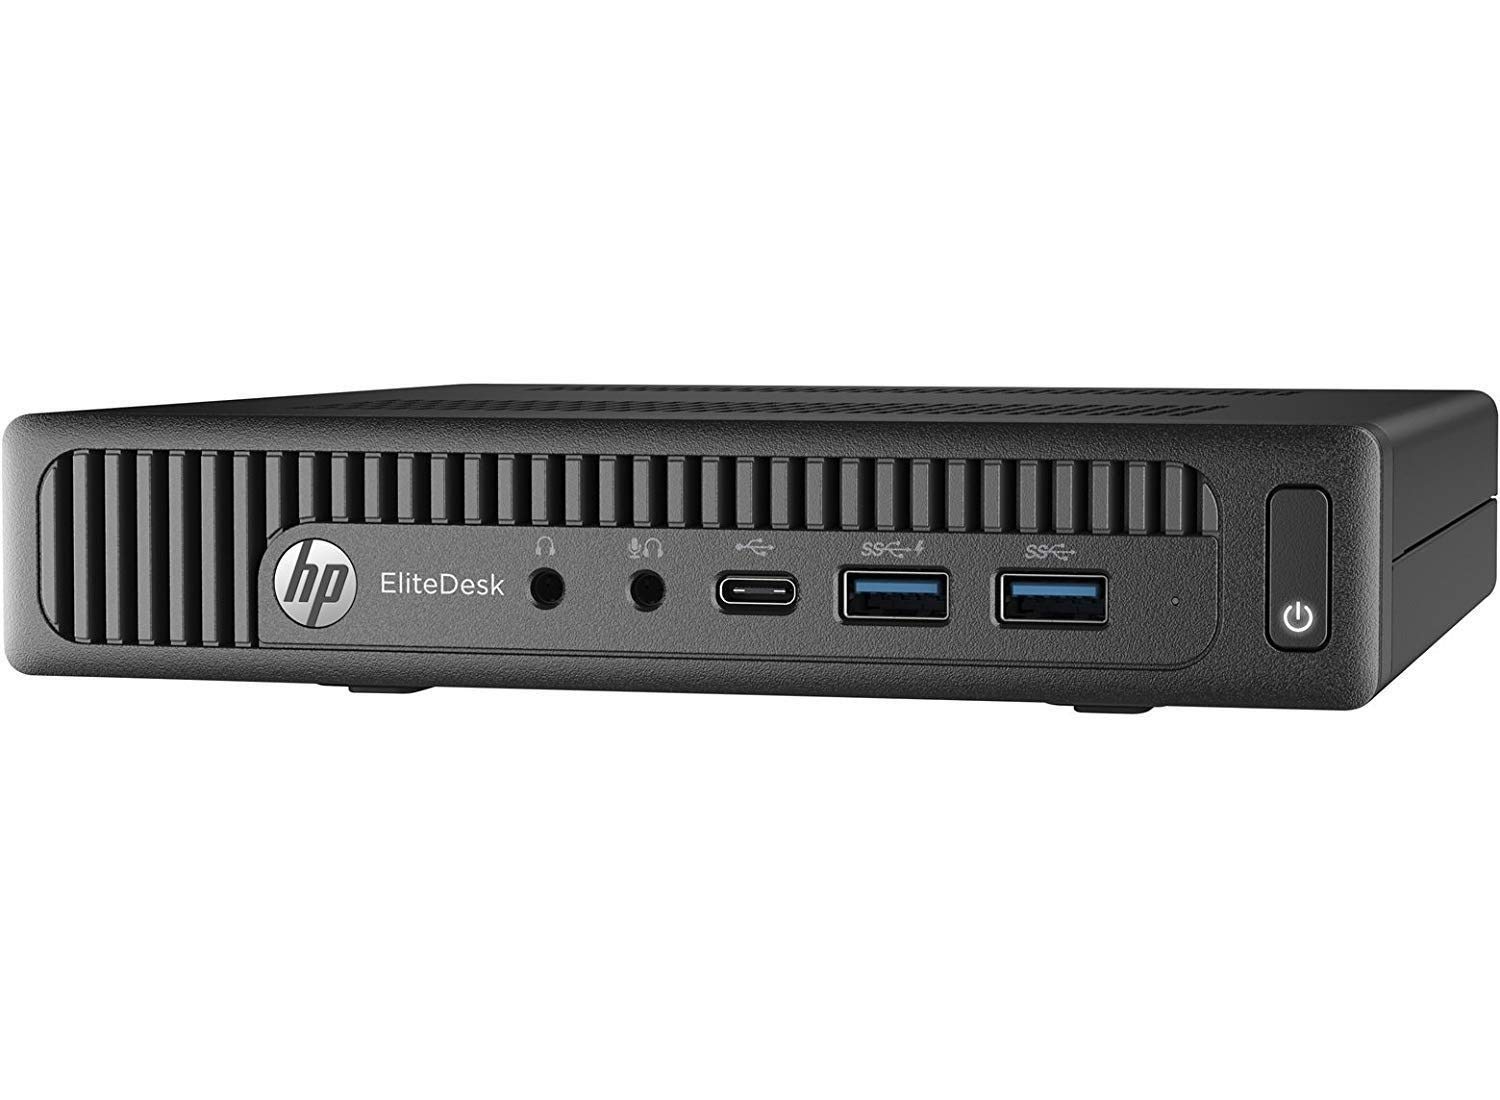 HP 600 G2 Micro Computer Mini Tower PC (Intel Quad Core i7-6700T, 32GB DDR4 Ram,512GB Solid State SSD, WiFi, VGA, USB 3.0) Win 10 Pro (Renewed)